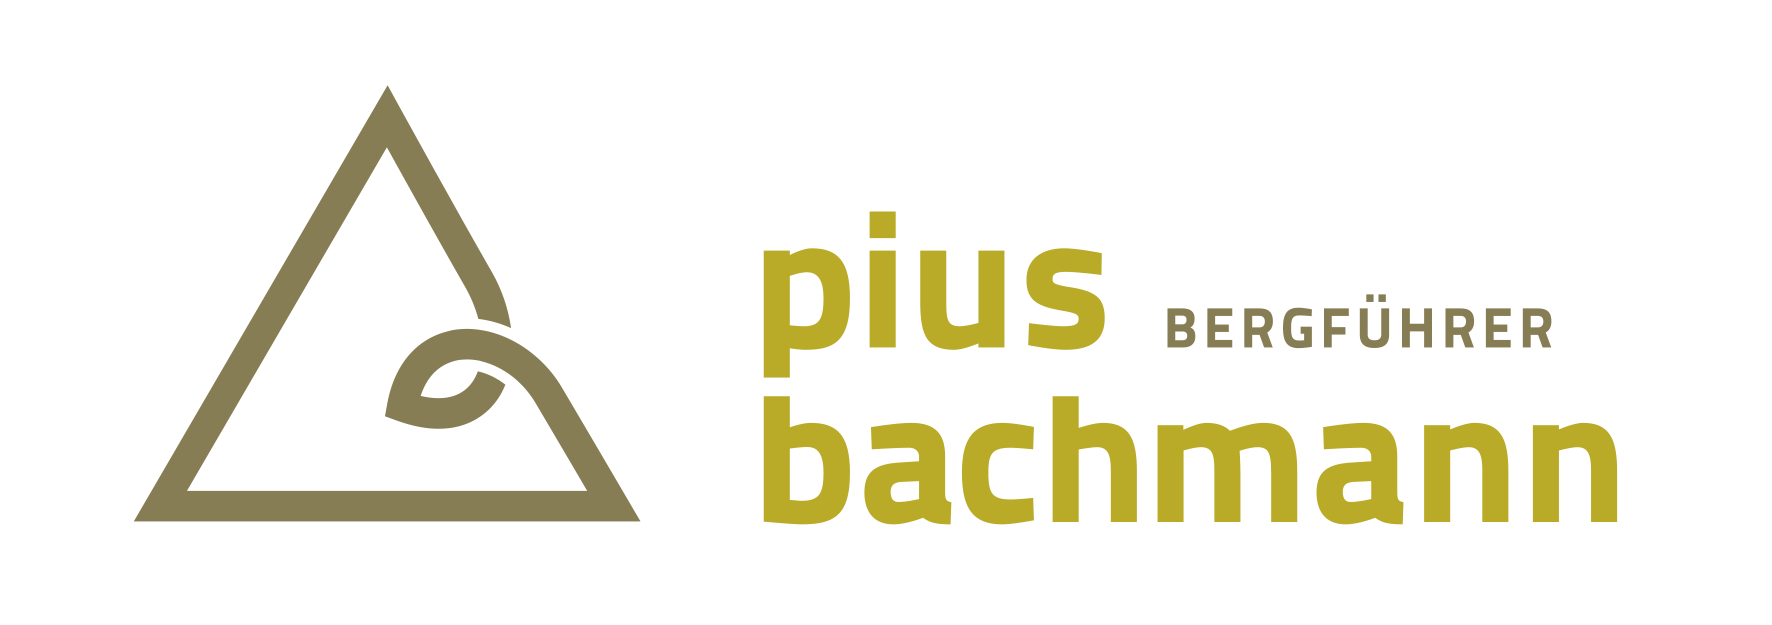 Bergführer Pius Bachmann